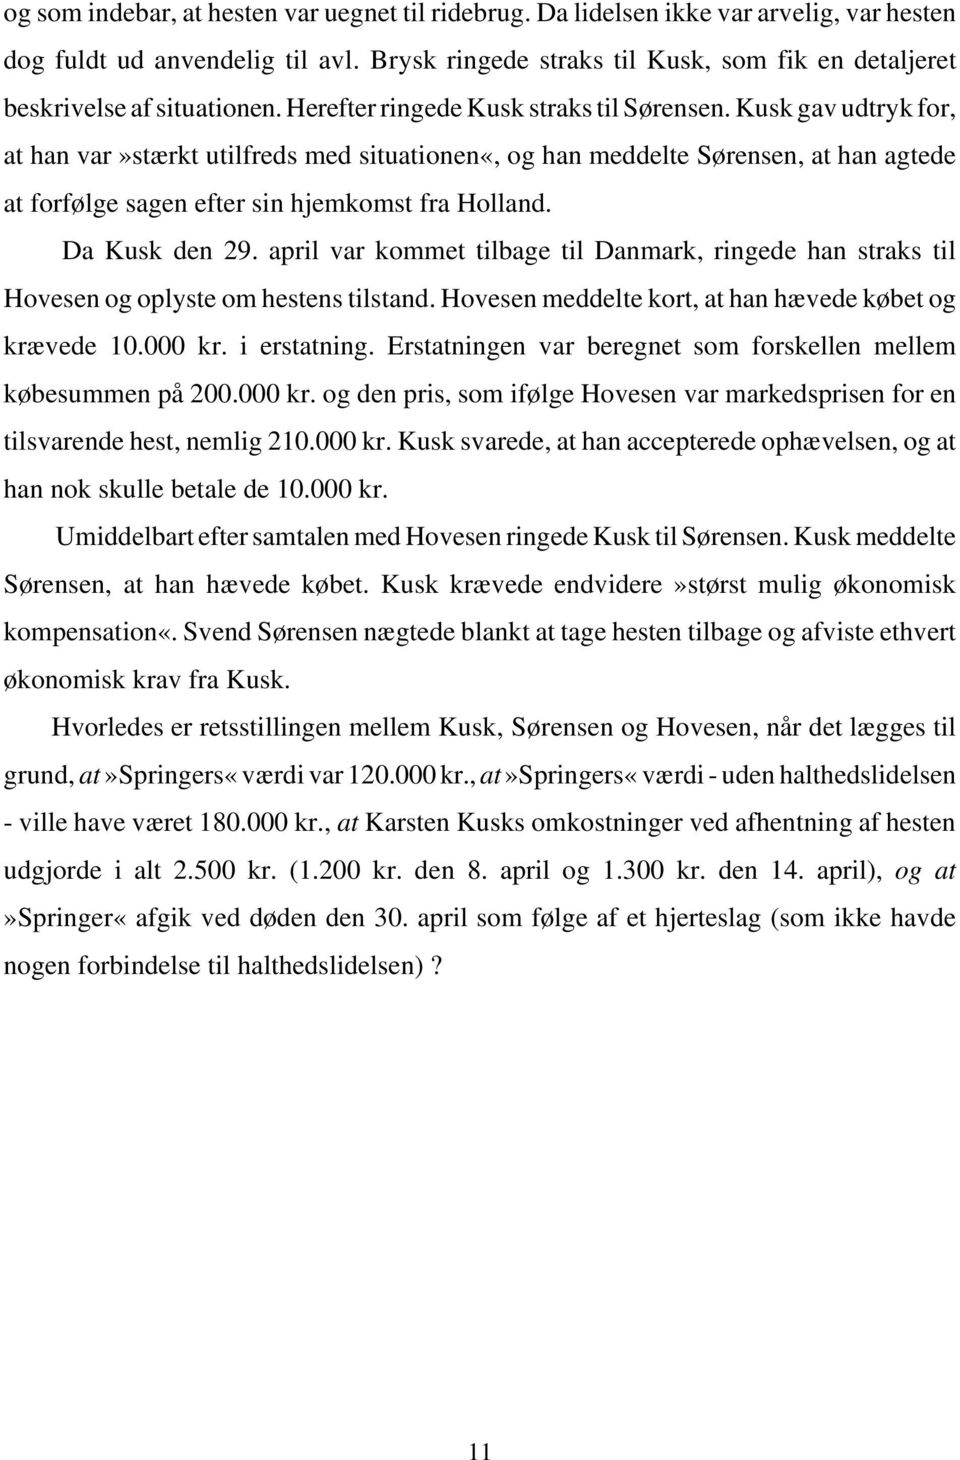 Kusk gav udtryk for, at han var»stærkt utilfreds med situationen«, og han meddelte Sørensen, at han agtede at forfølge sagen efter sin hjemkomst fra Holland. Da Kusk den 29.